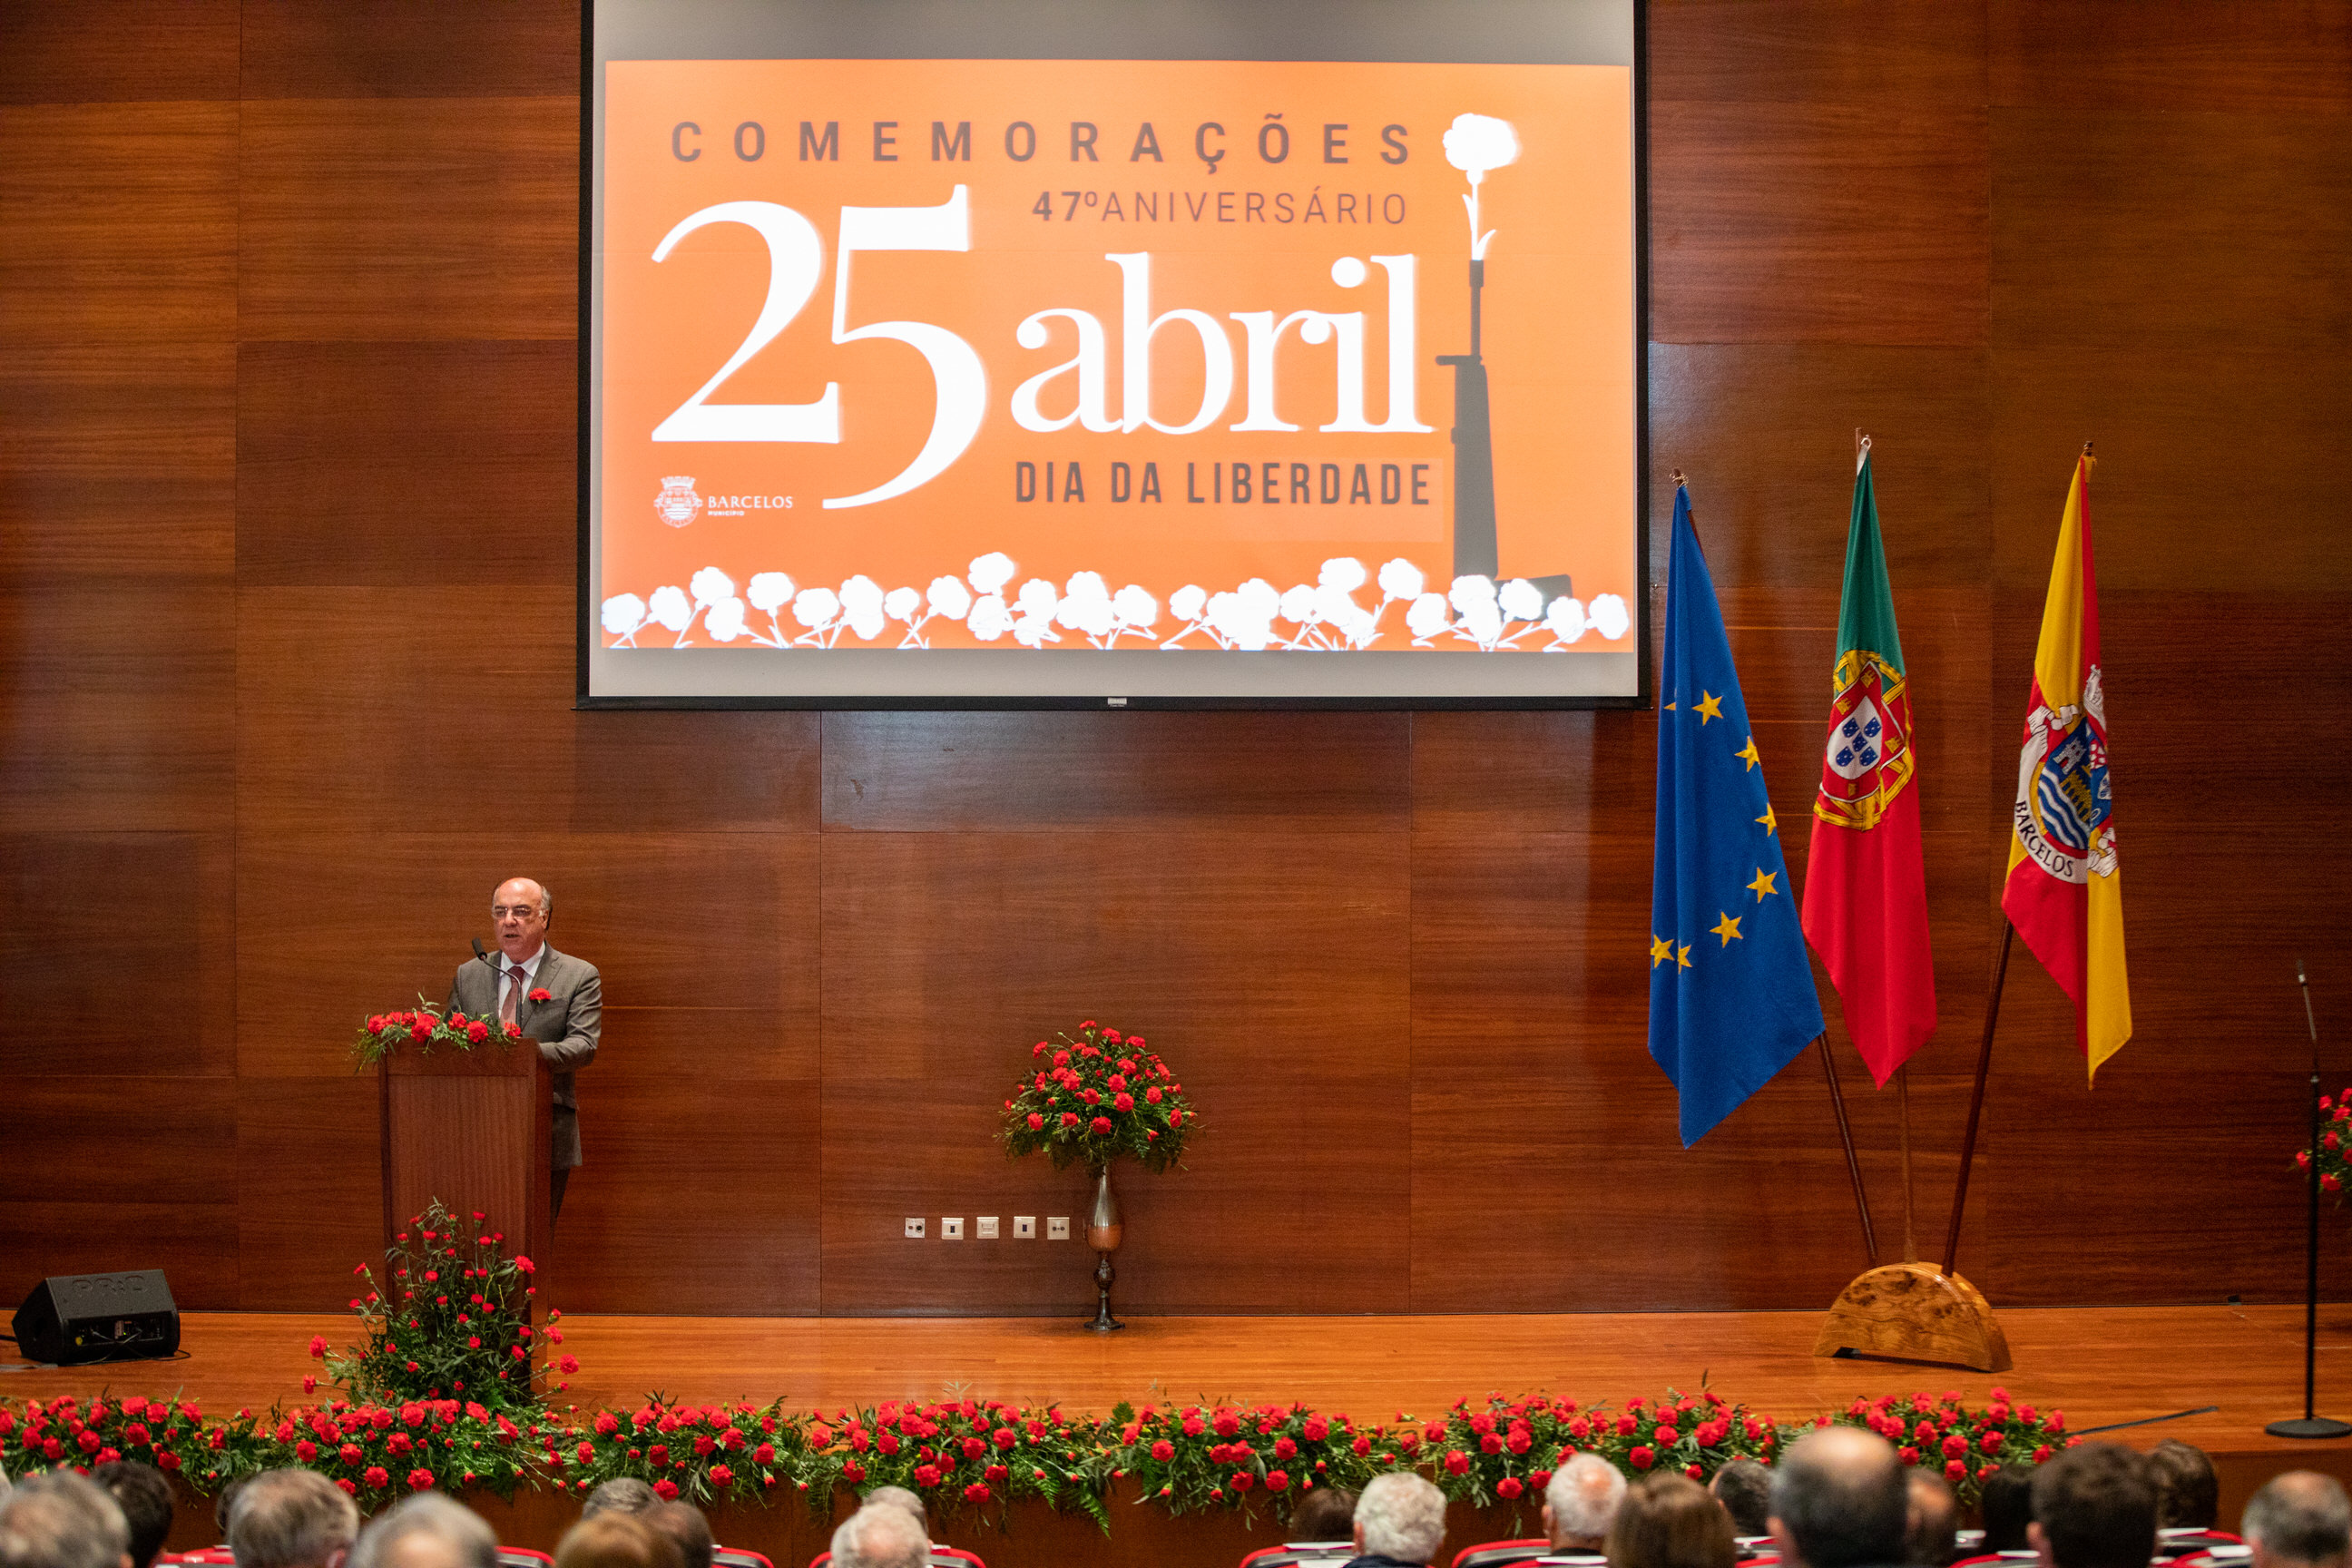 Município de Barcelos comemorou os 47 anos da Revolução de Abril